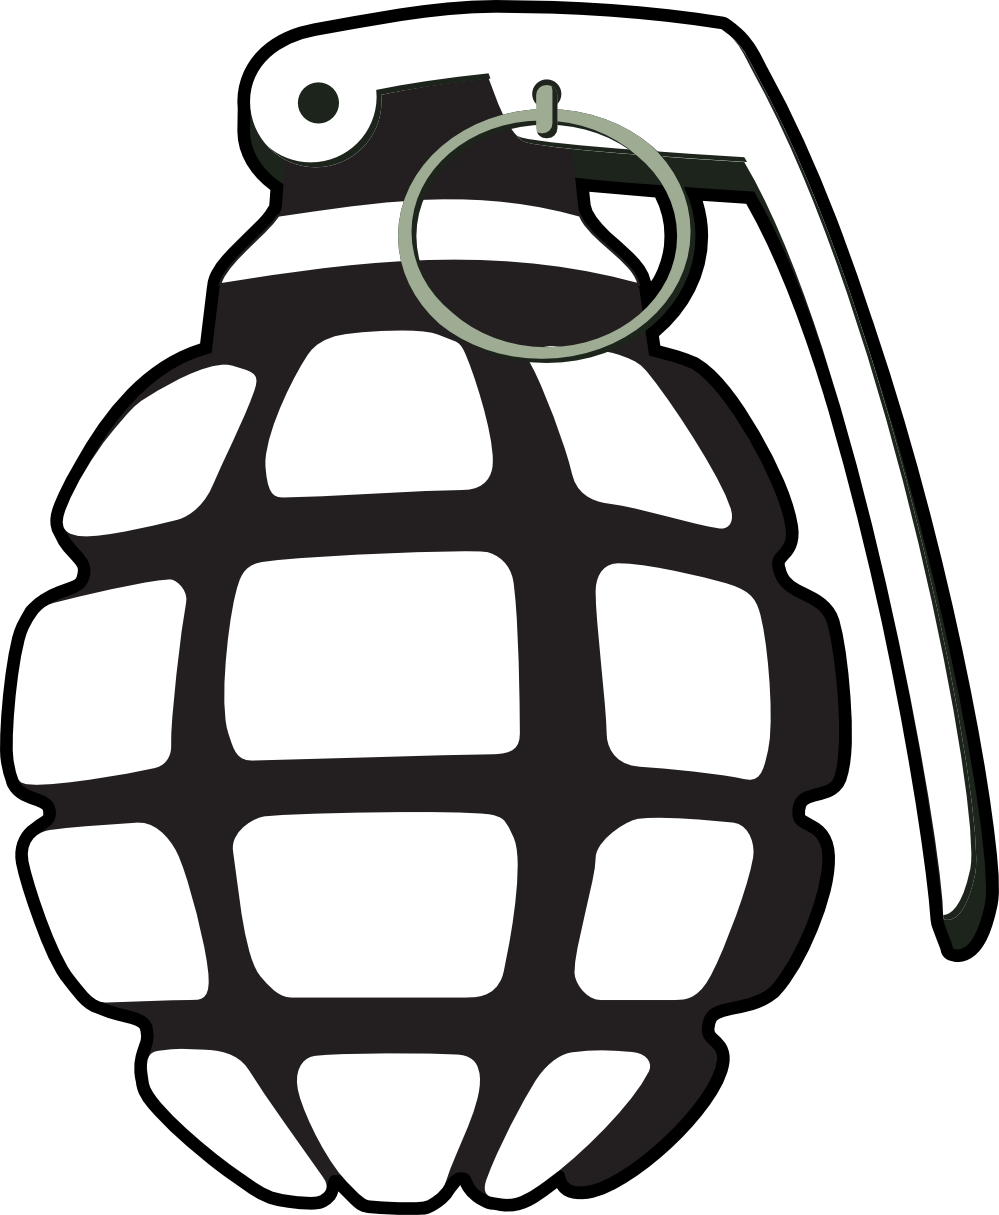 grenade normal tzunghaor black white line art hunky dory SVG ...